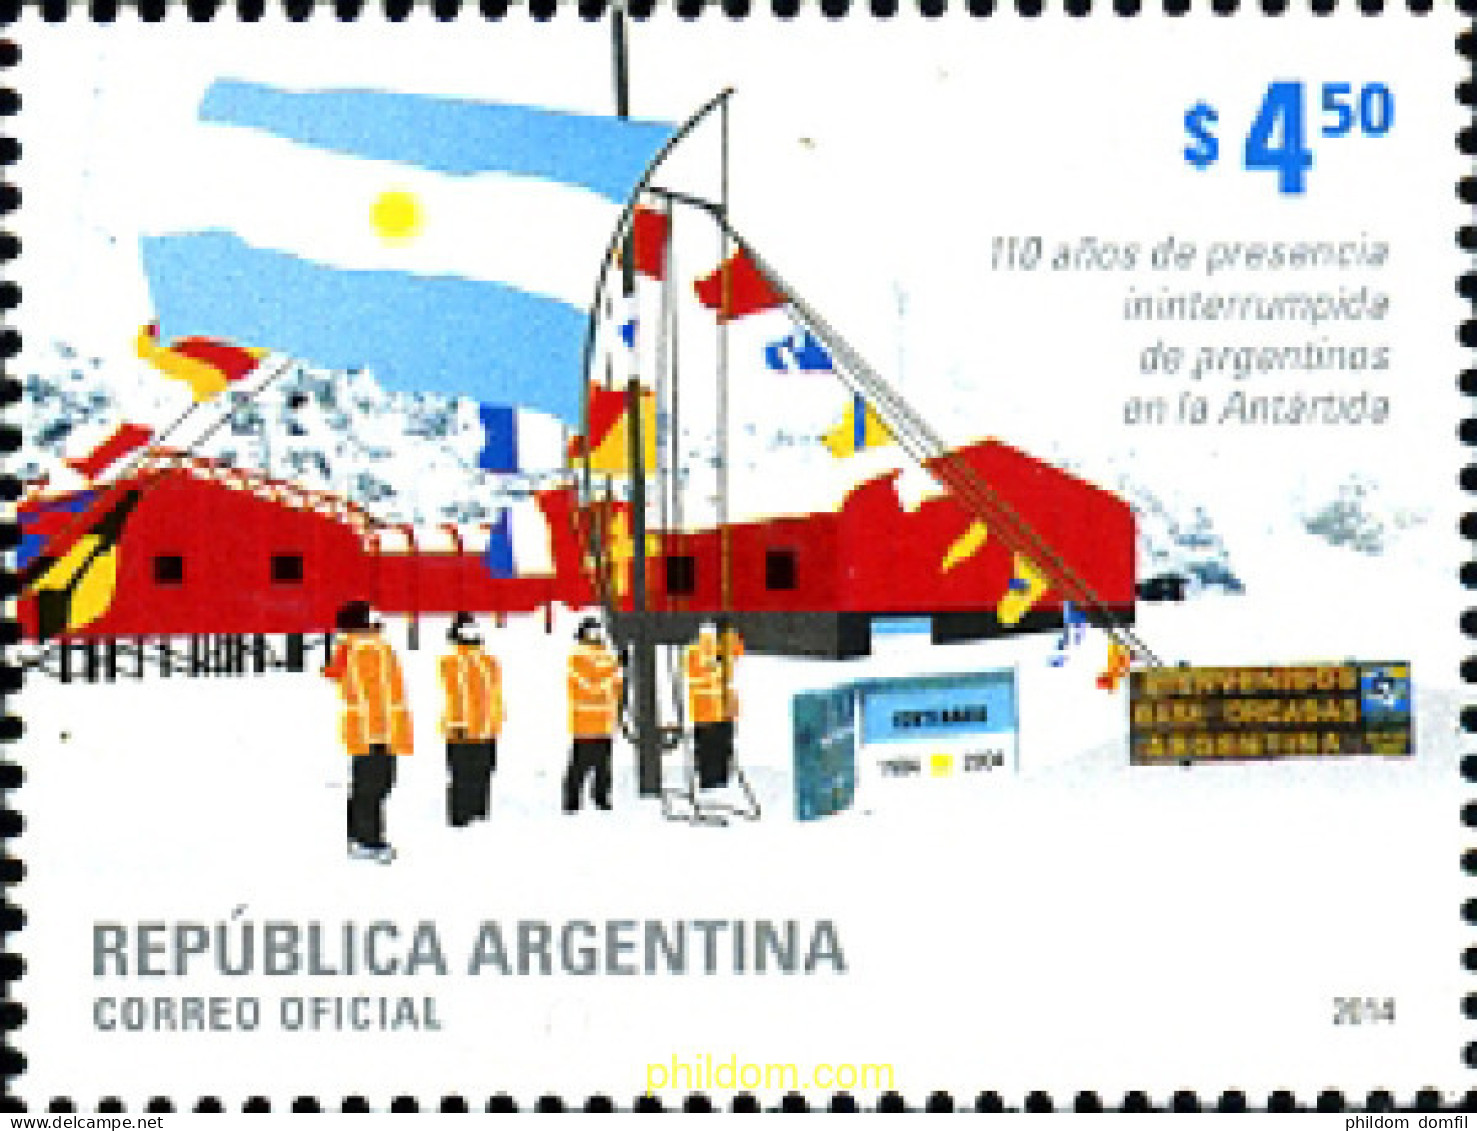 318473 MNH ARGENTINA 2014 110 ANIVERSARIO DE LA PRESENCIA ARGENTINA EN LA ANTARTICA - Unused Stamps